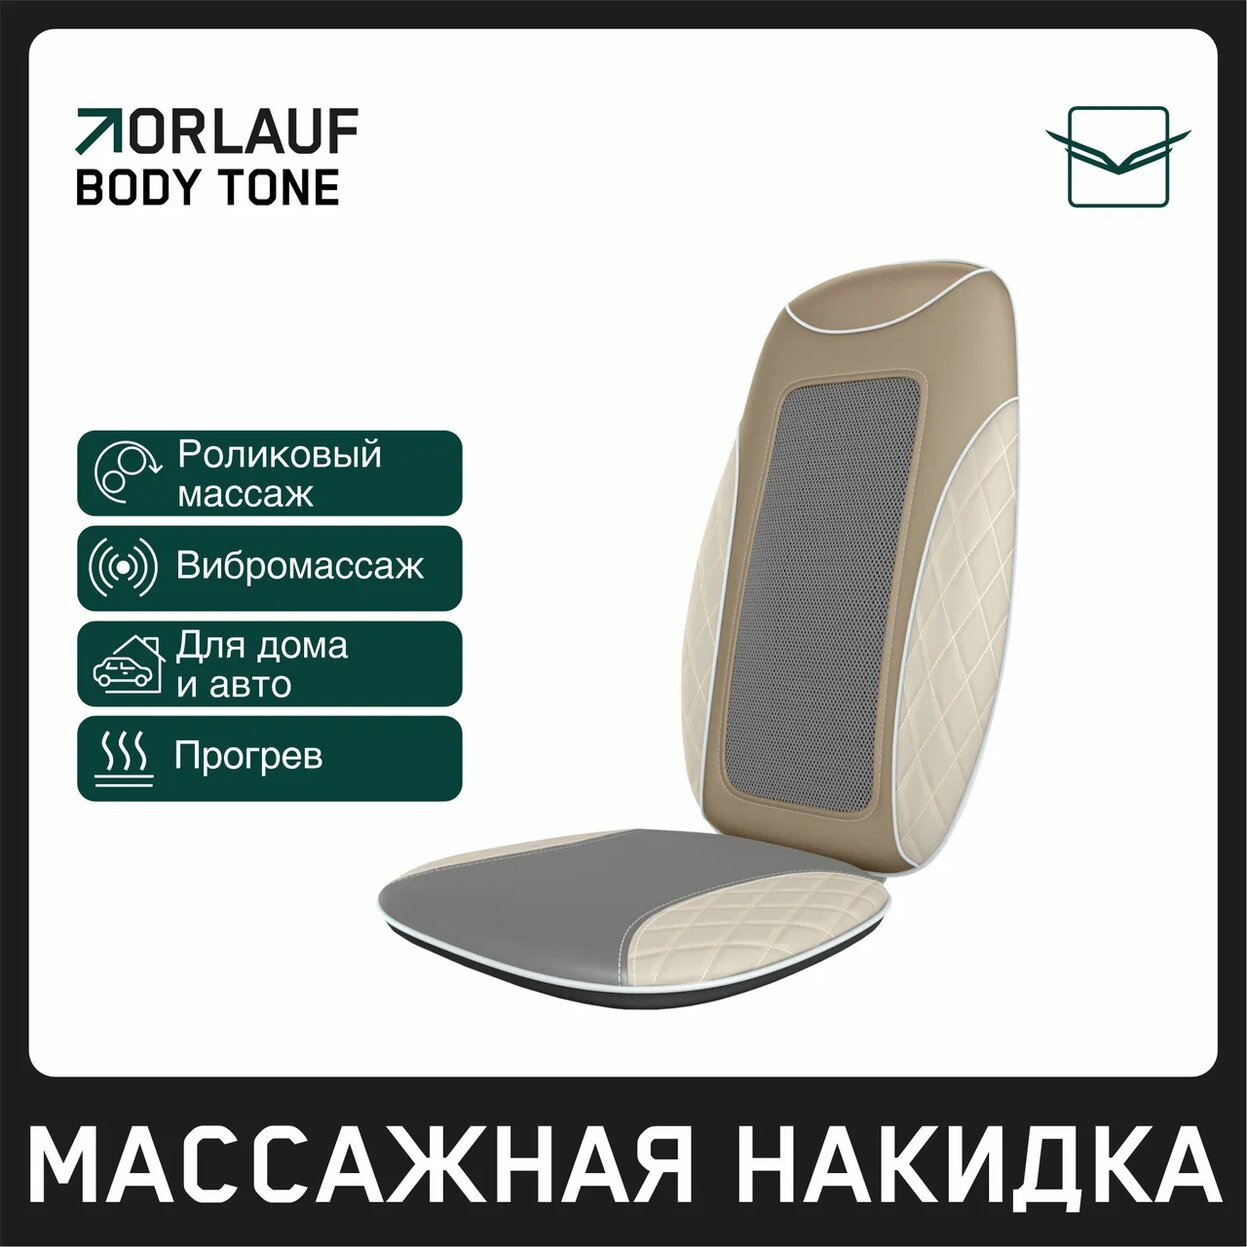 Body Tone в Москве по цене 15400 ₽ в категории массажные накидки Orlauf